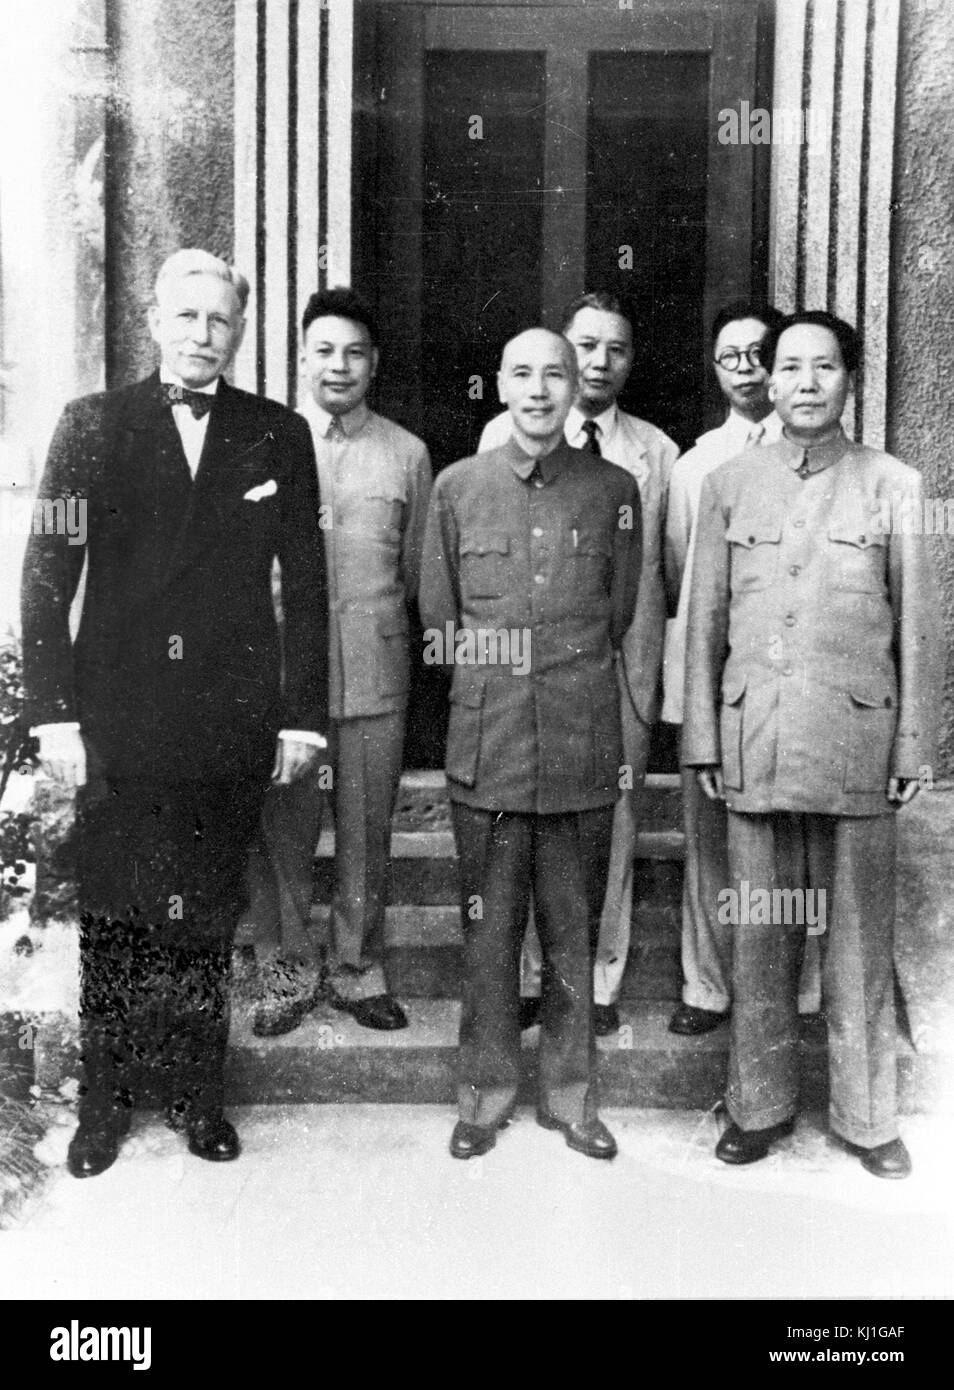 Président de la Chine nationaliste, Chiang Kai-shek avec leader communiste chinois Mao Zedong, réunion à Chongqing, Chine, 1945. L'ambassadeur américain, Patrick Hurley est de son côté Banque D'Images